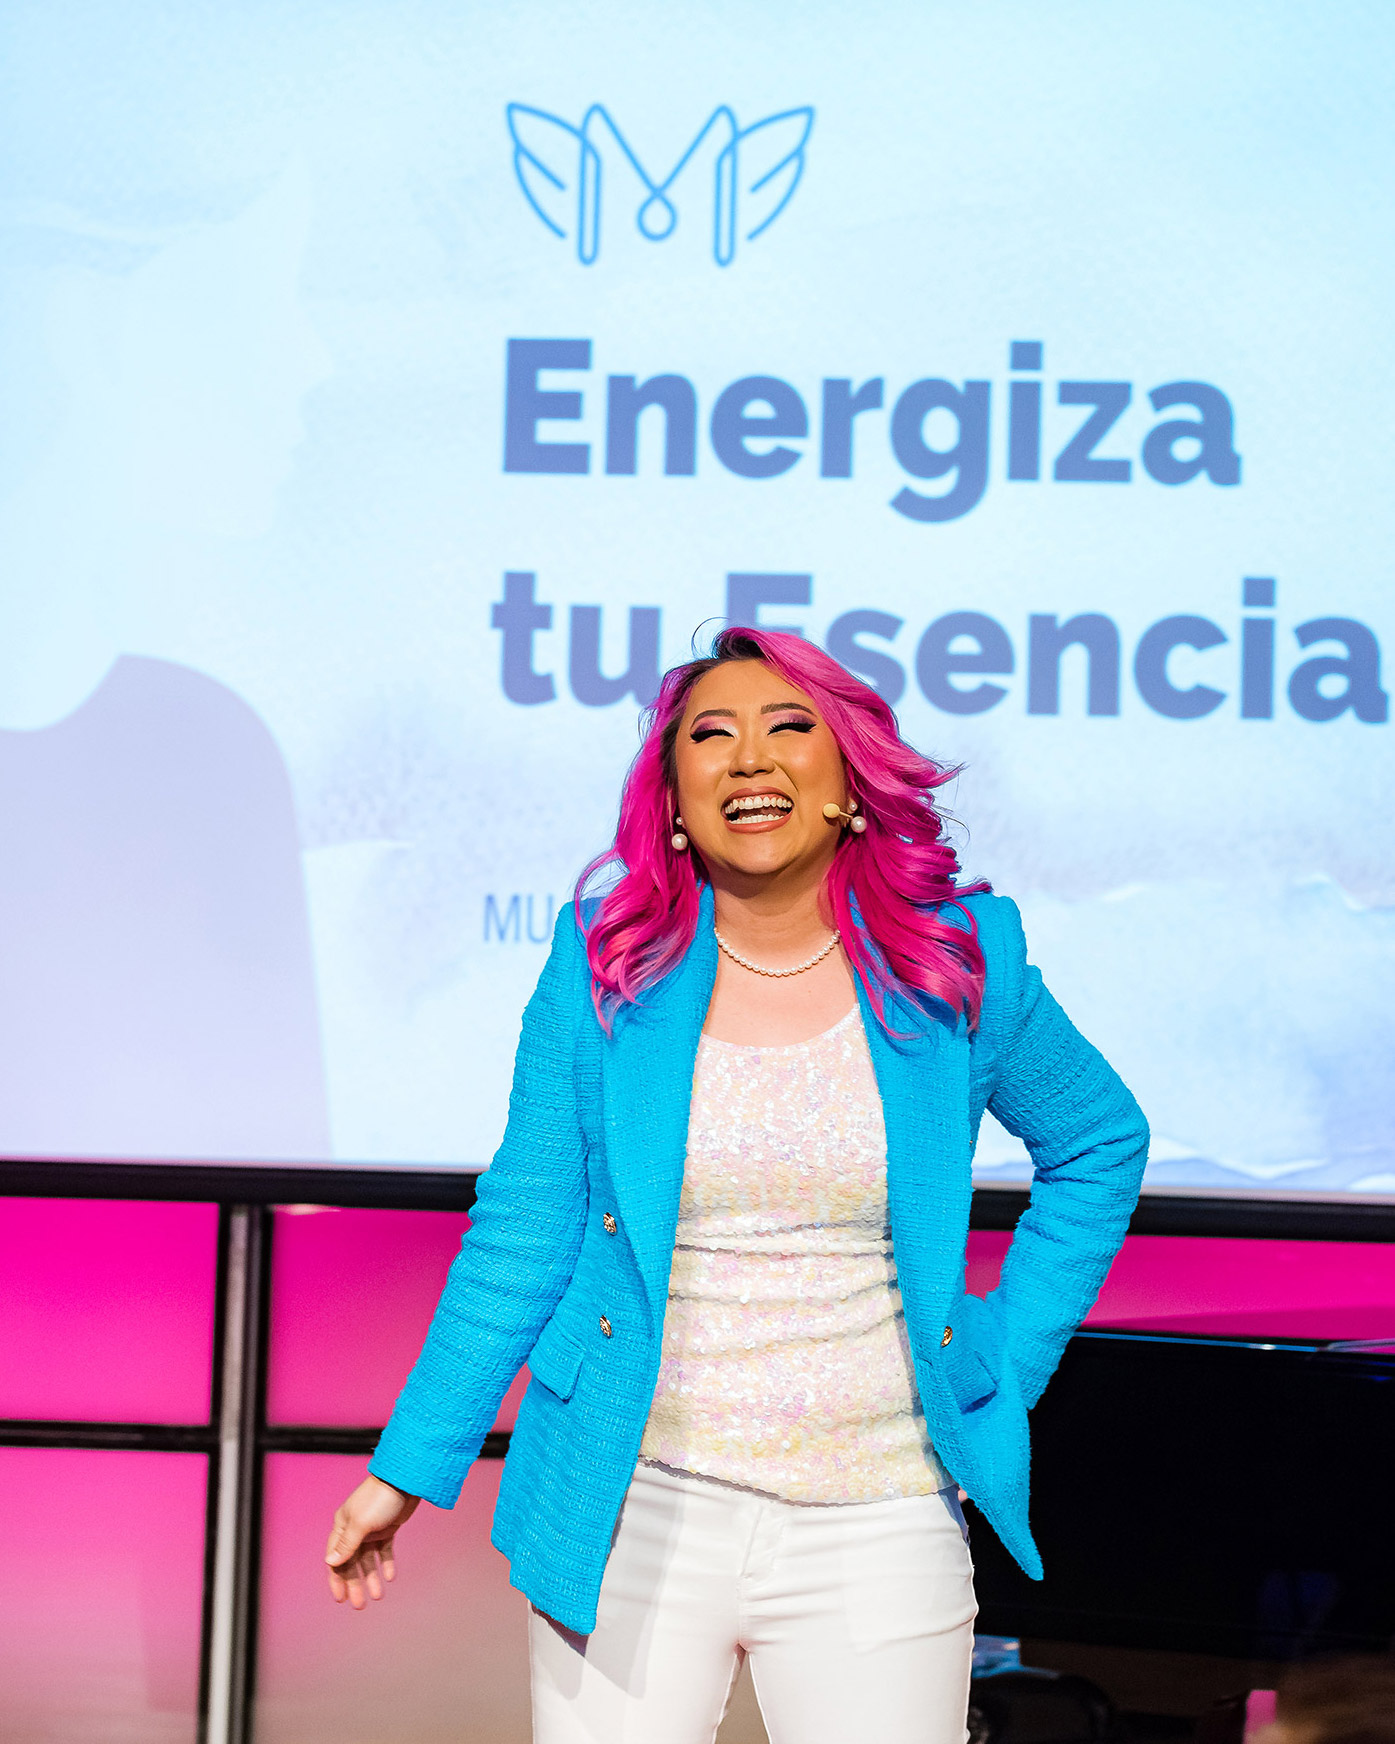 Teresa Park founder of Mujeres del Futuro vertical